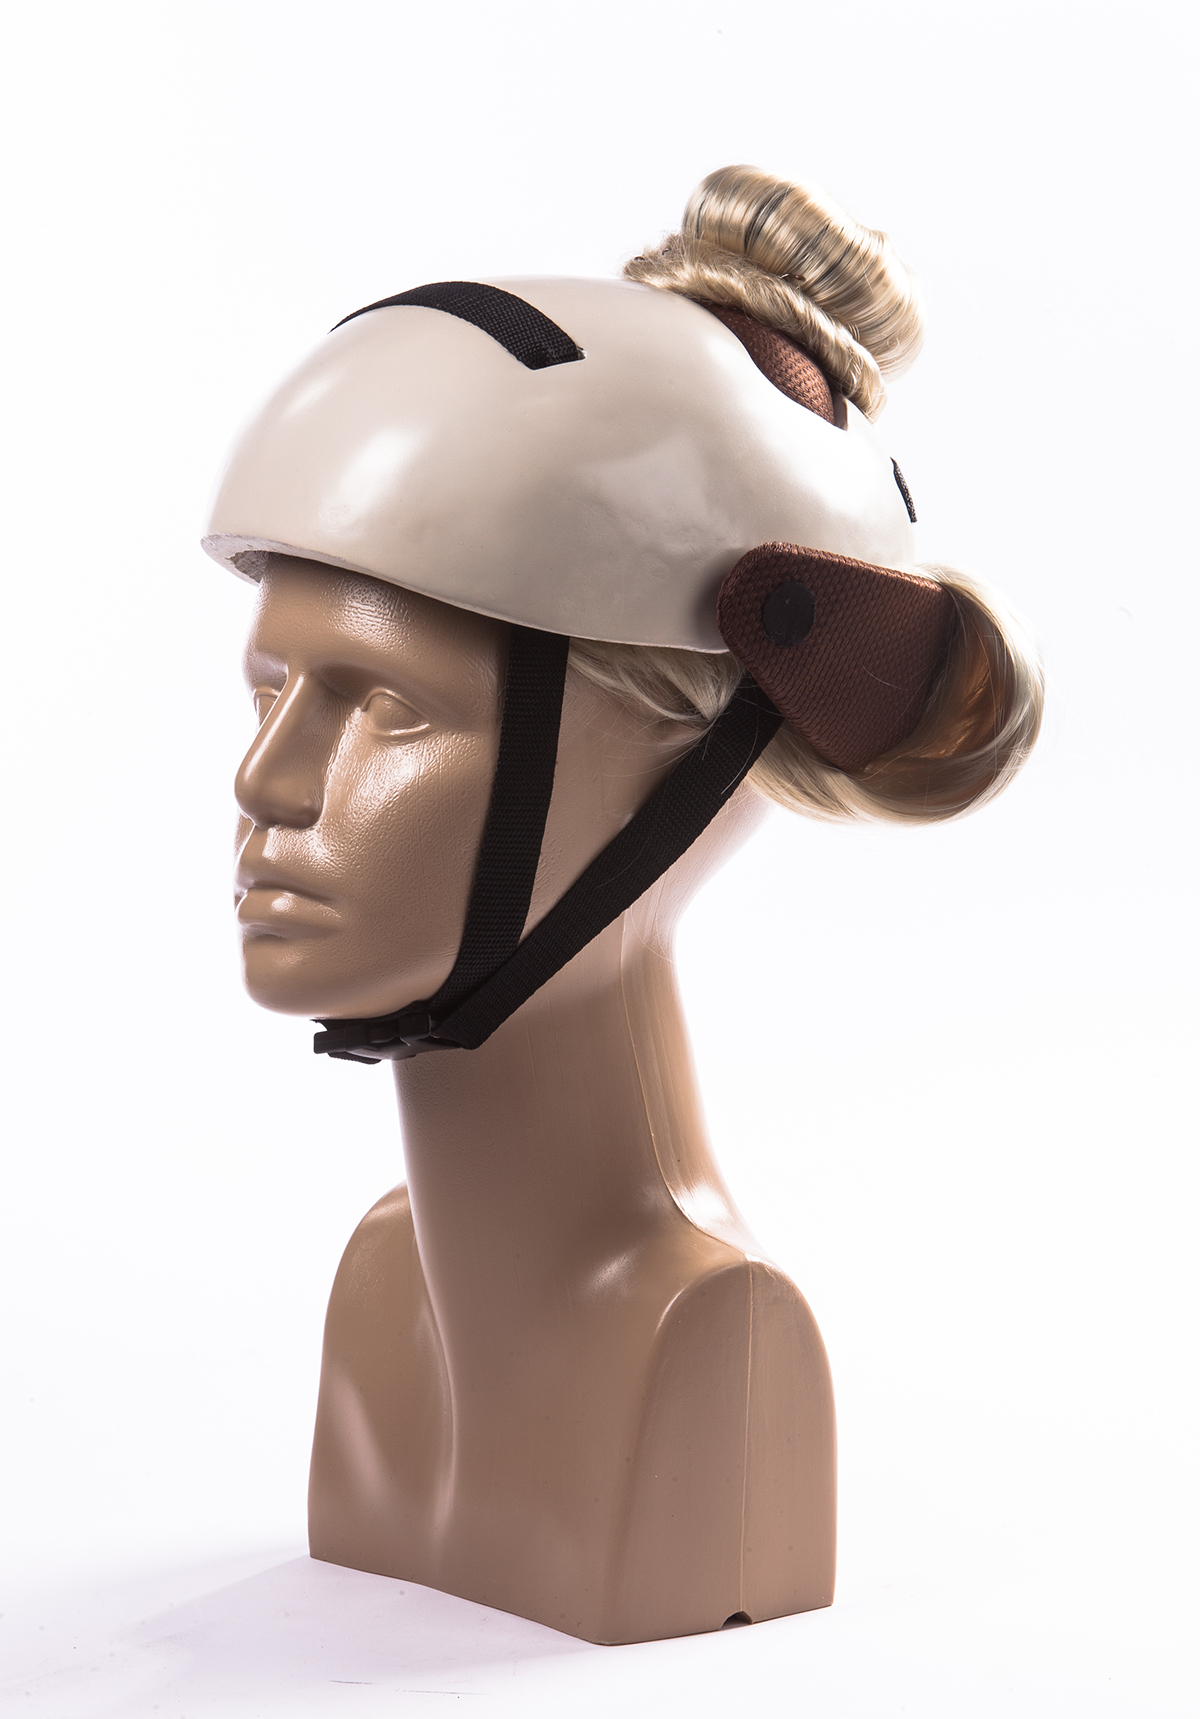 Helmet Bicycle hair design